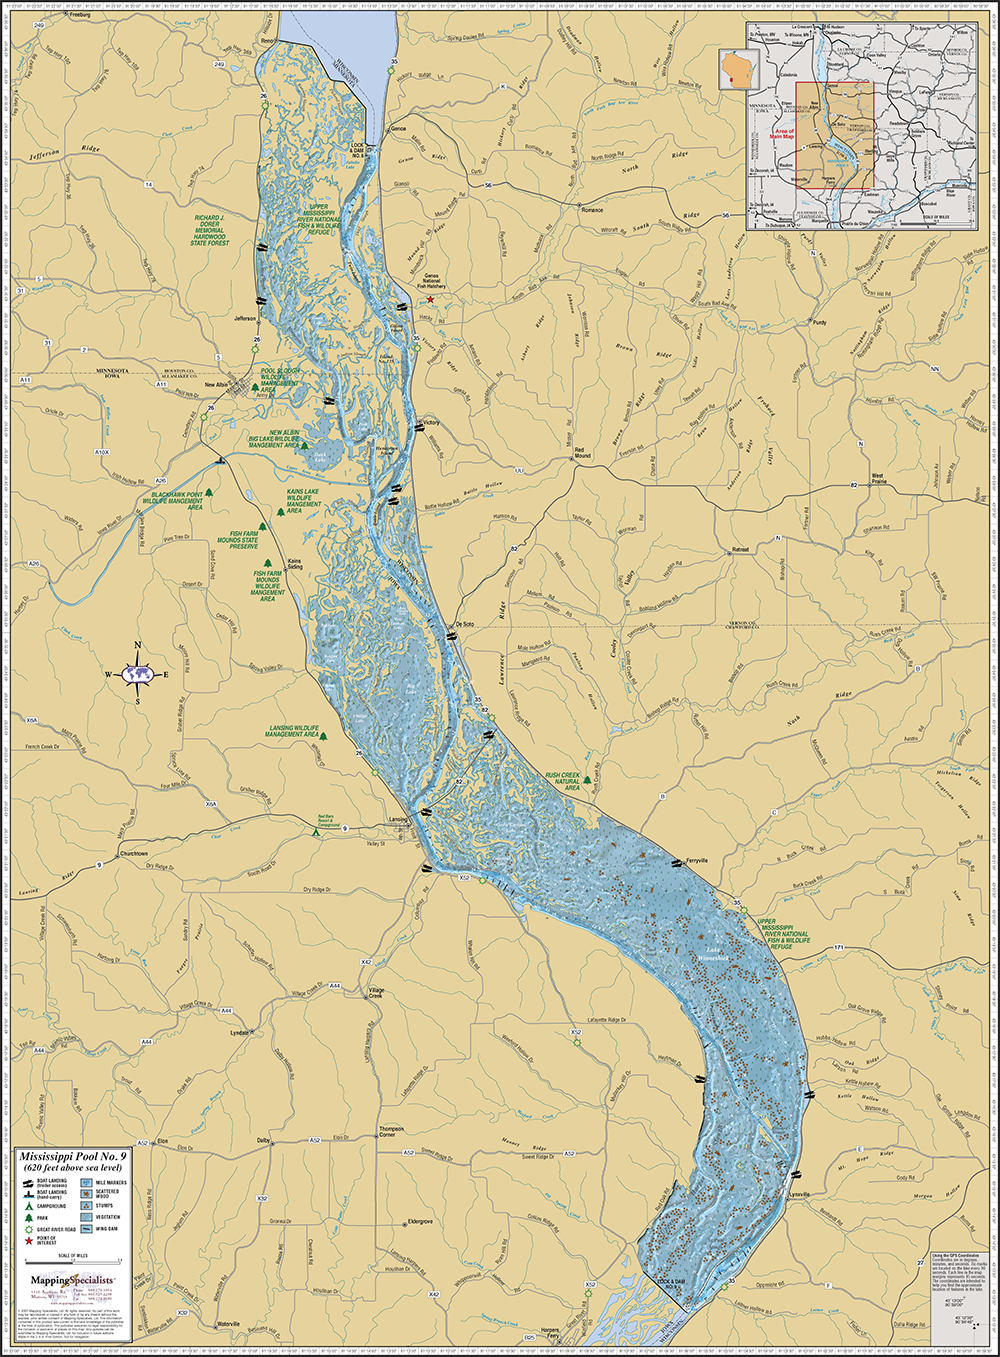 Левый приток реки миссисипи. Река Миссисипи на карте. Притоки Миссисипи на карте. Миссисипи река географическая карта. Крупные притоки Миссисипи.